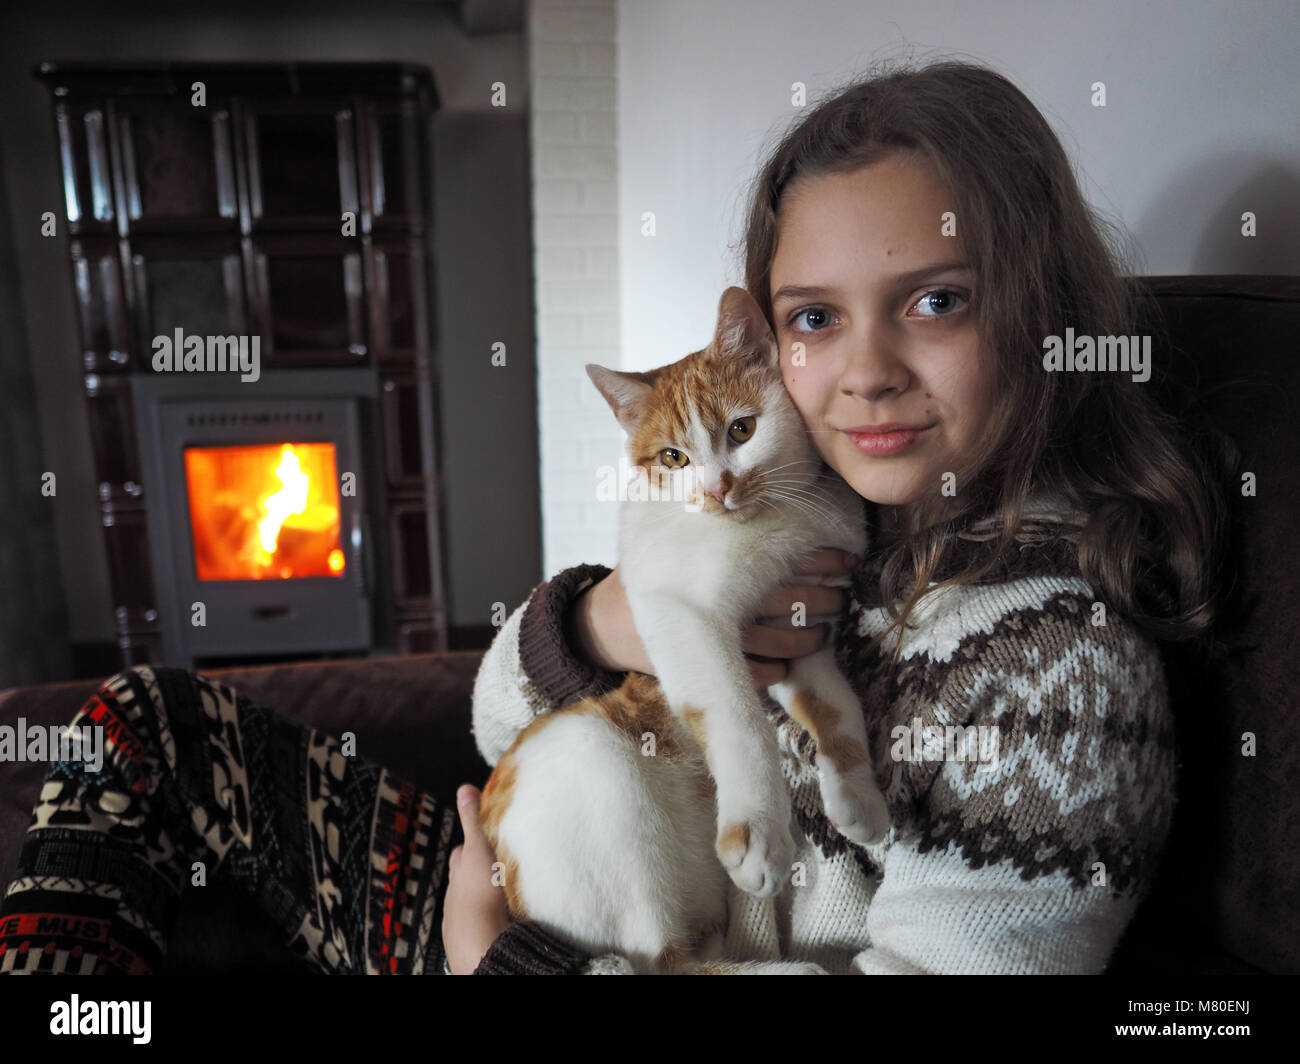 Piscina shot giovane Ragazza con gatto Foto Stock